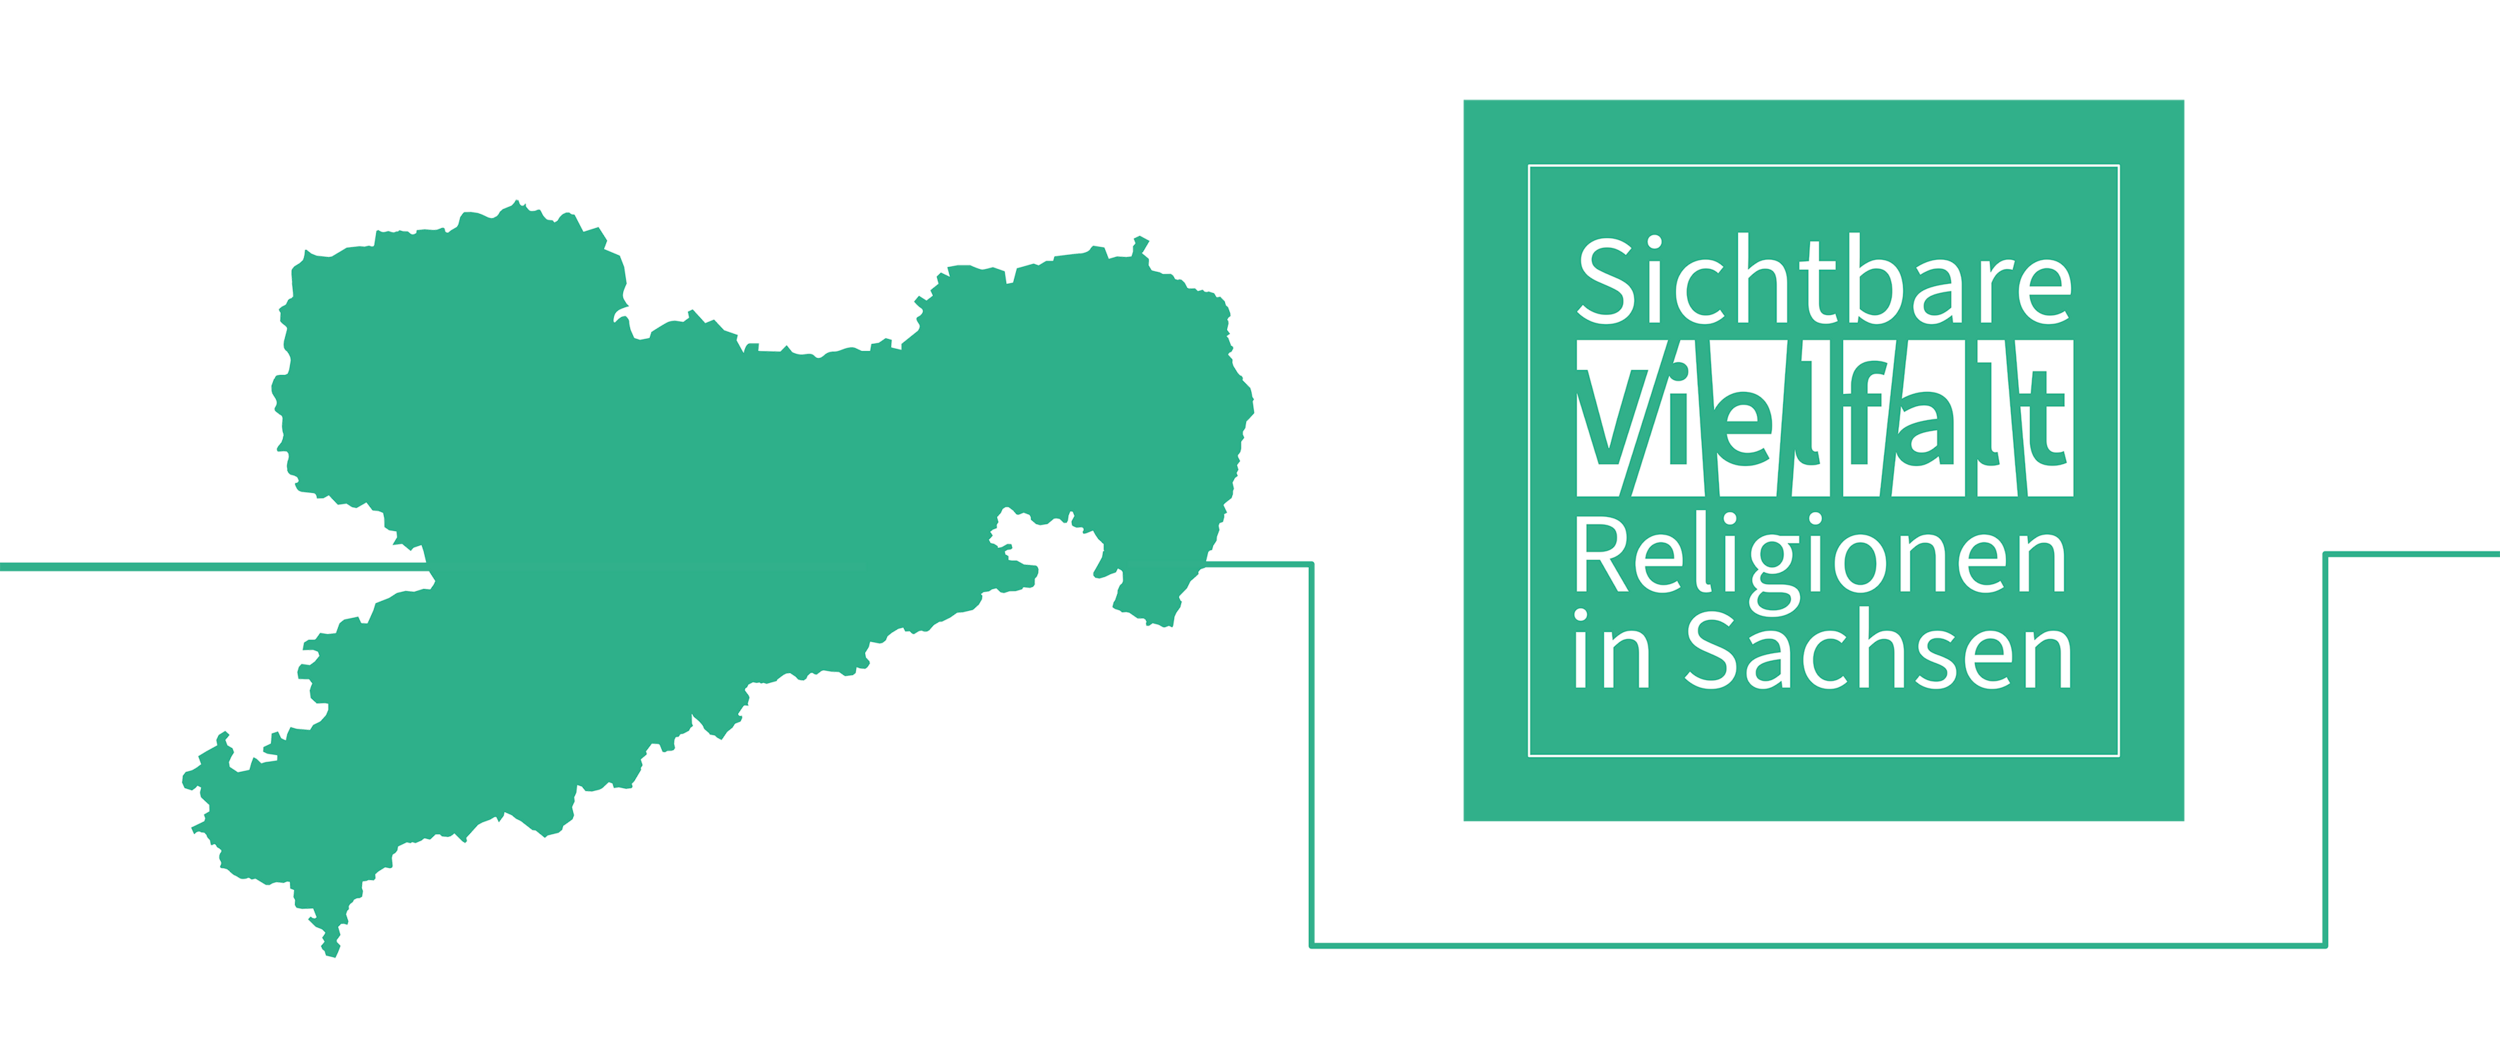 Religionen_in_Sachsen_2